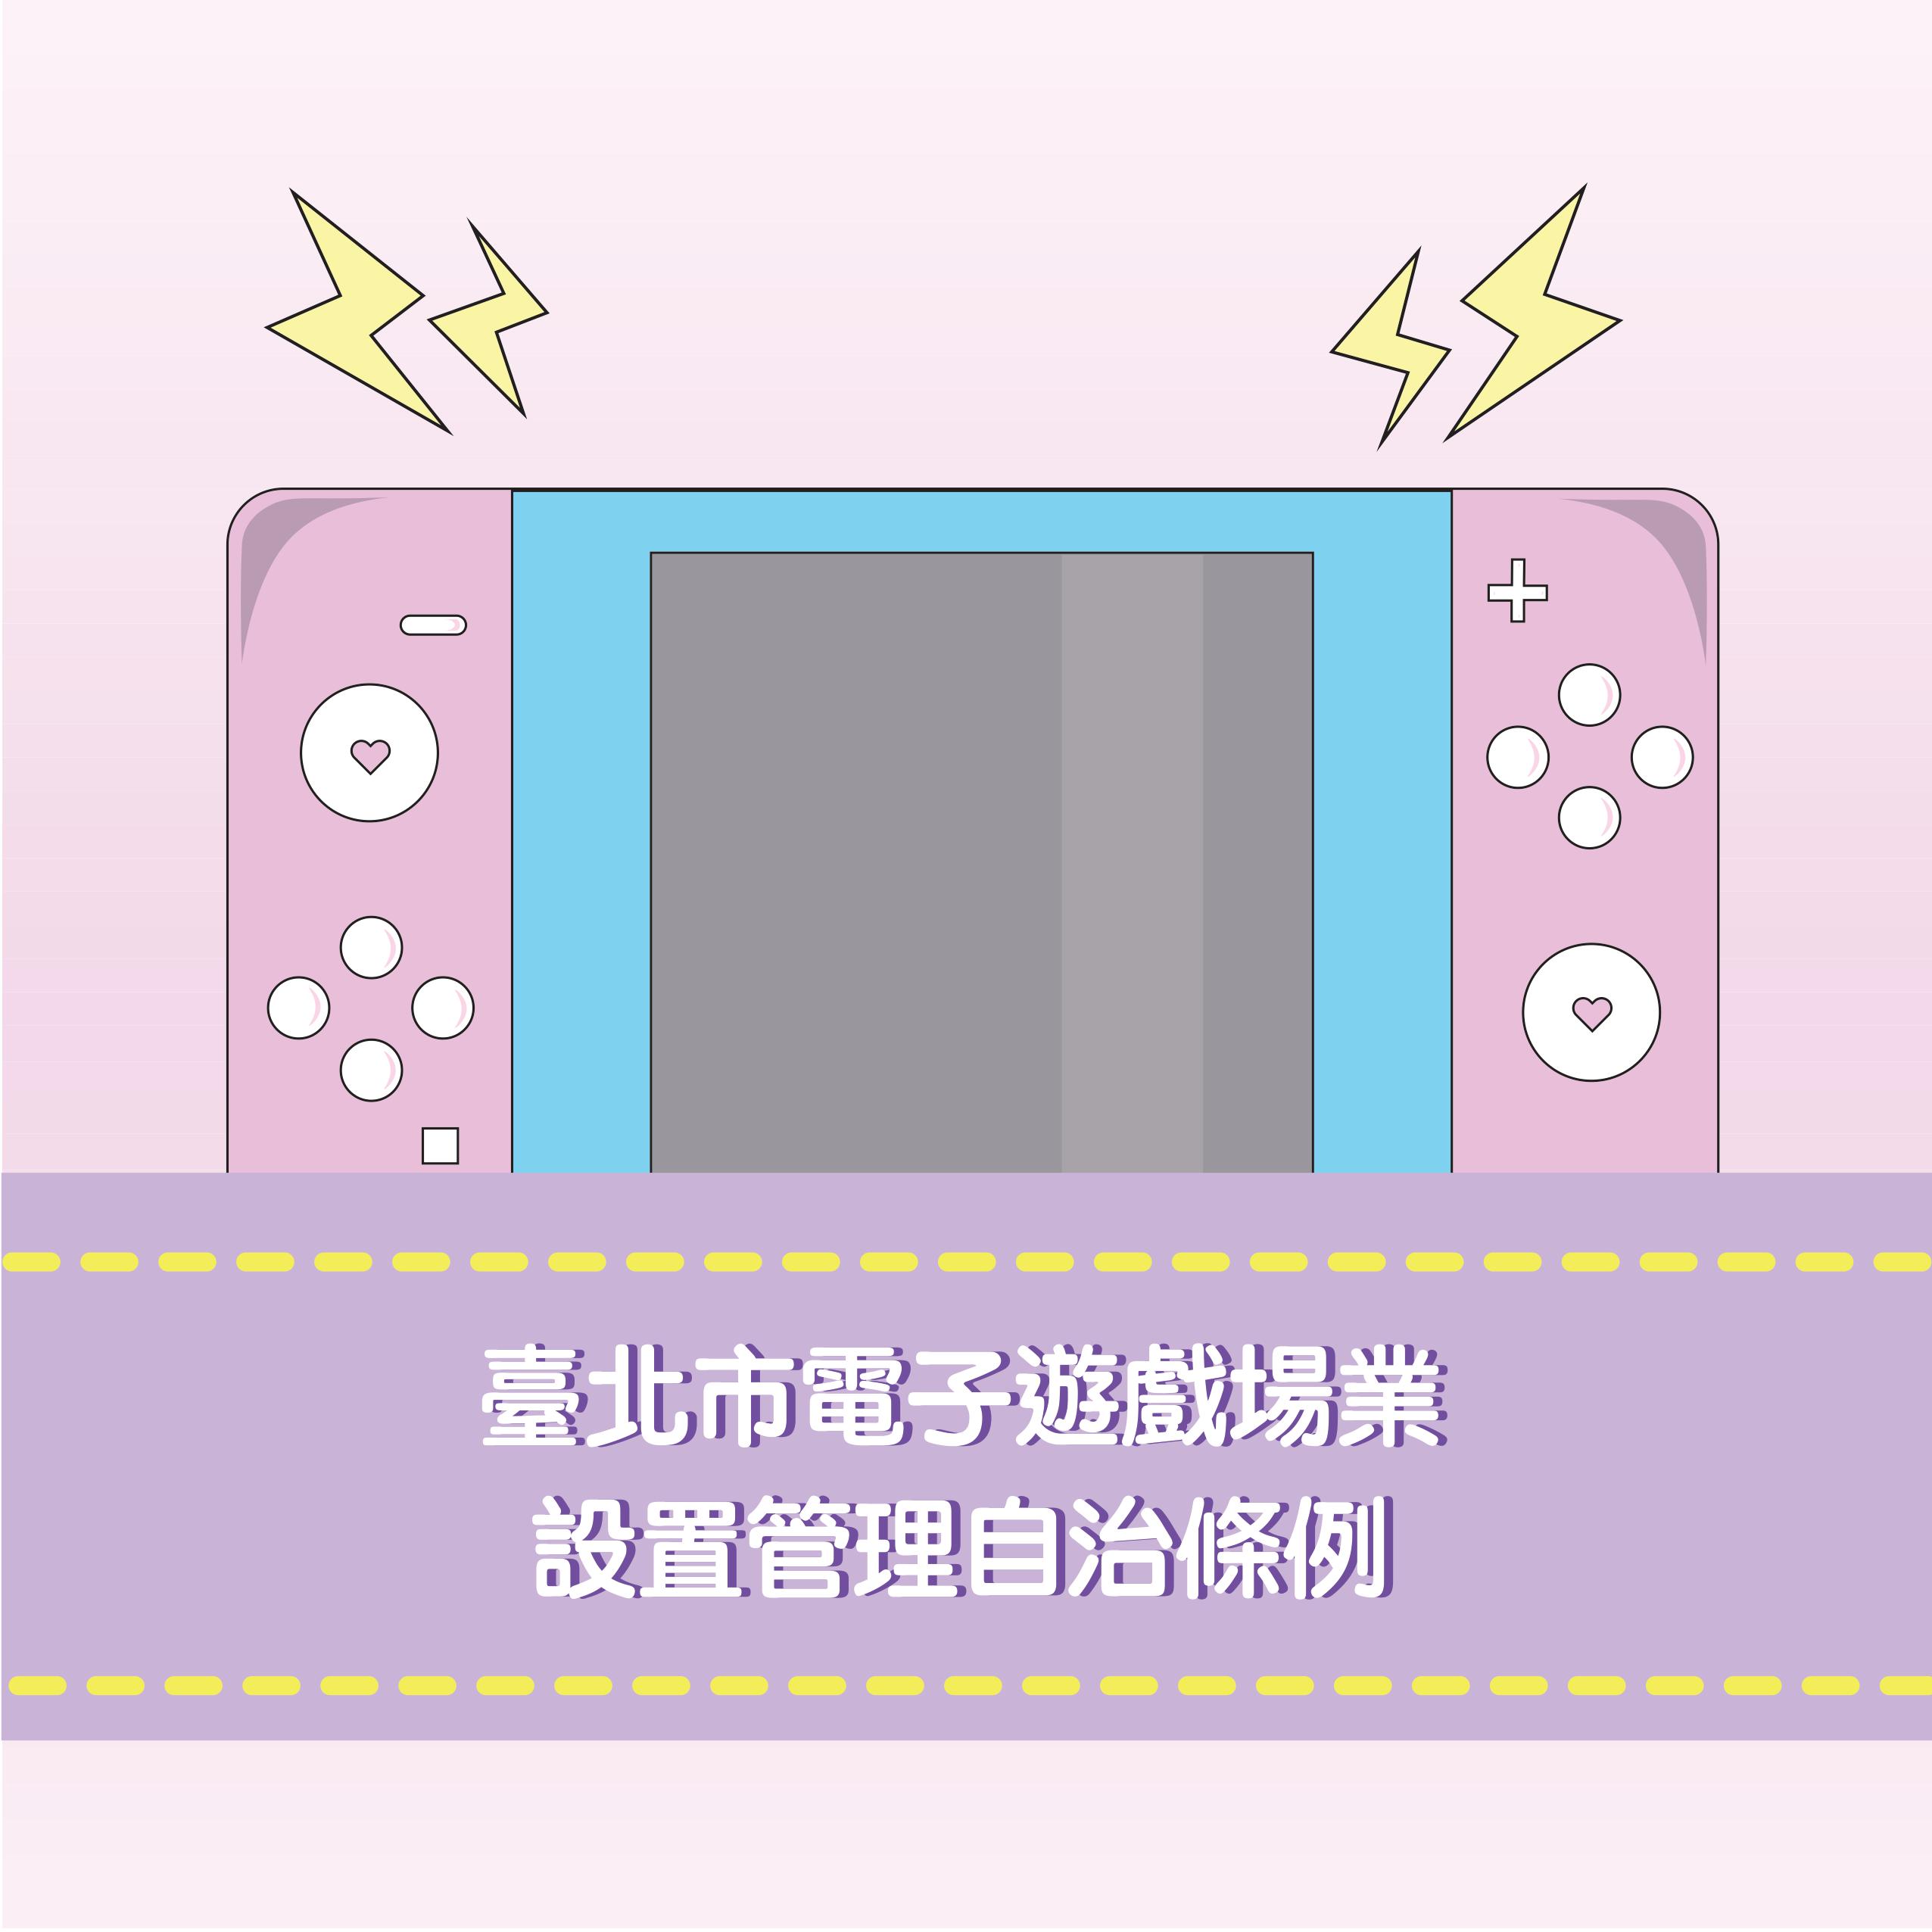 臺北市電子遊戲場業設置管理自治條例連結